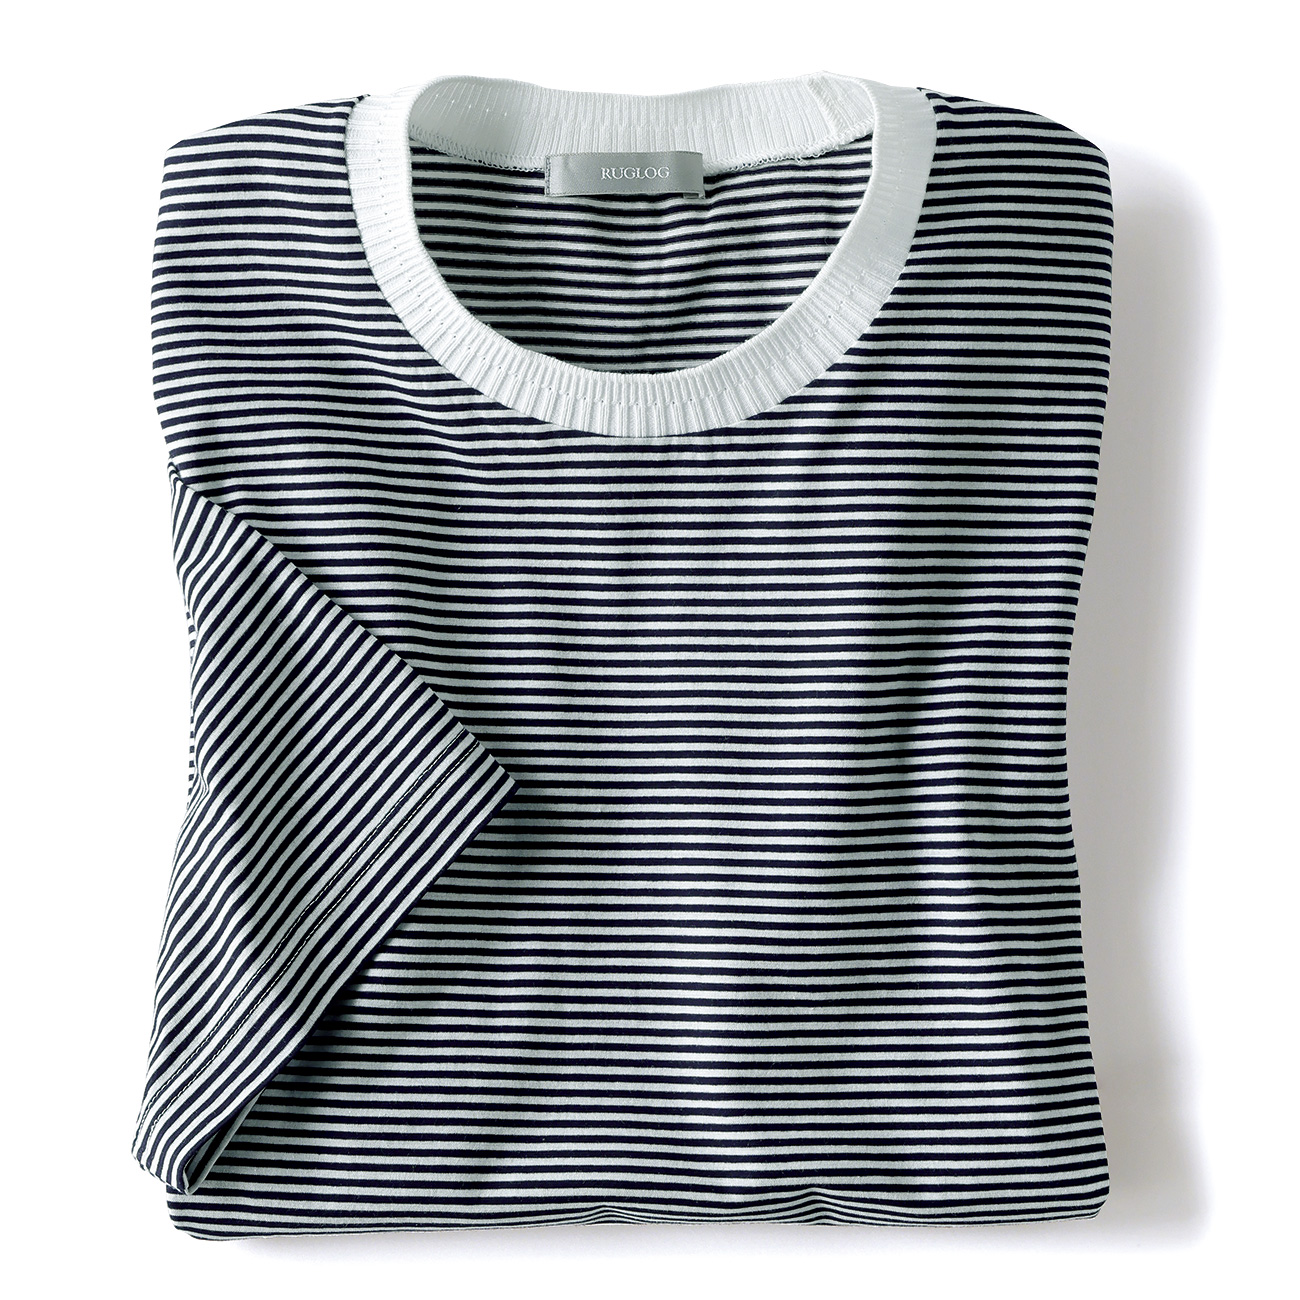 ニット襟の強撚コットンTシャツ